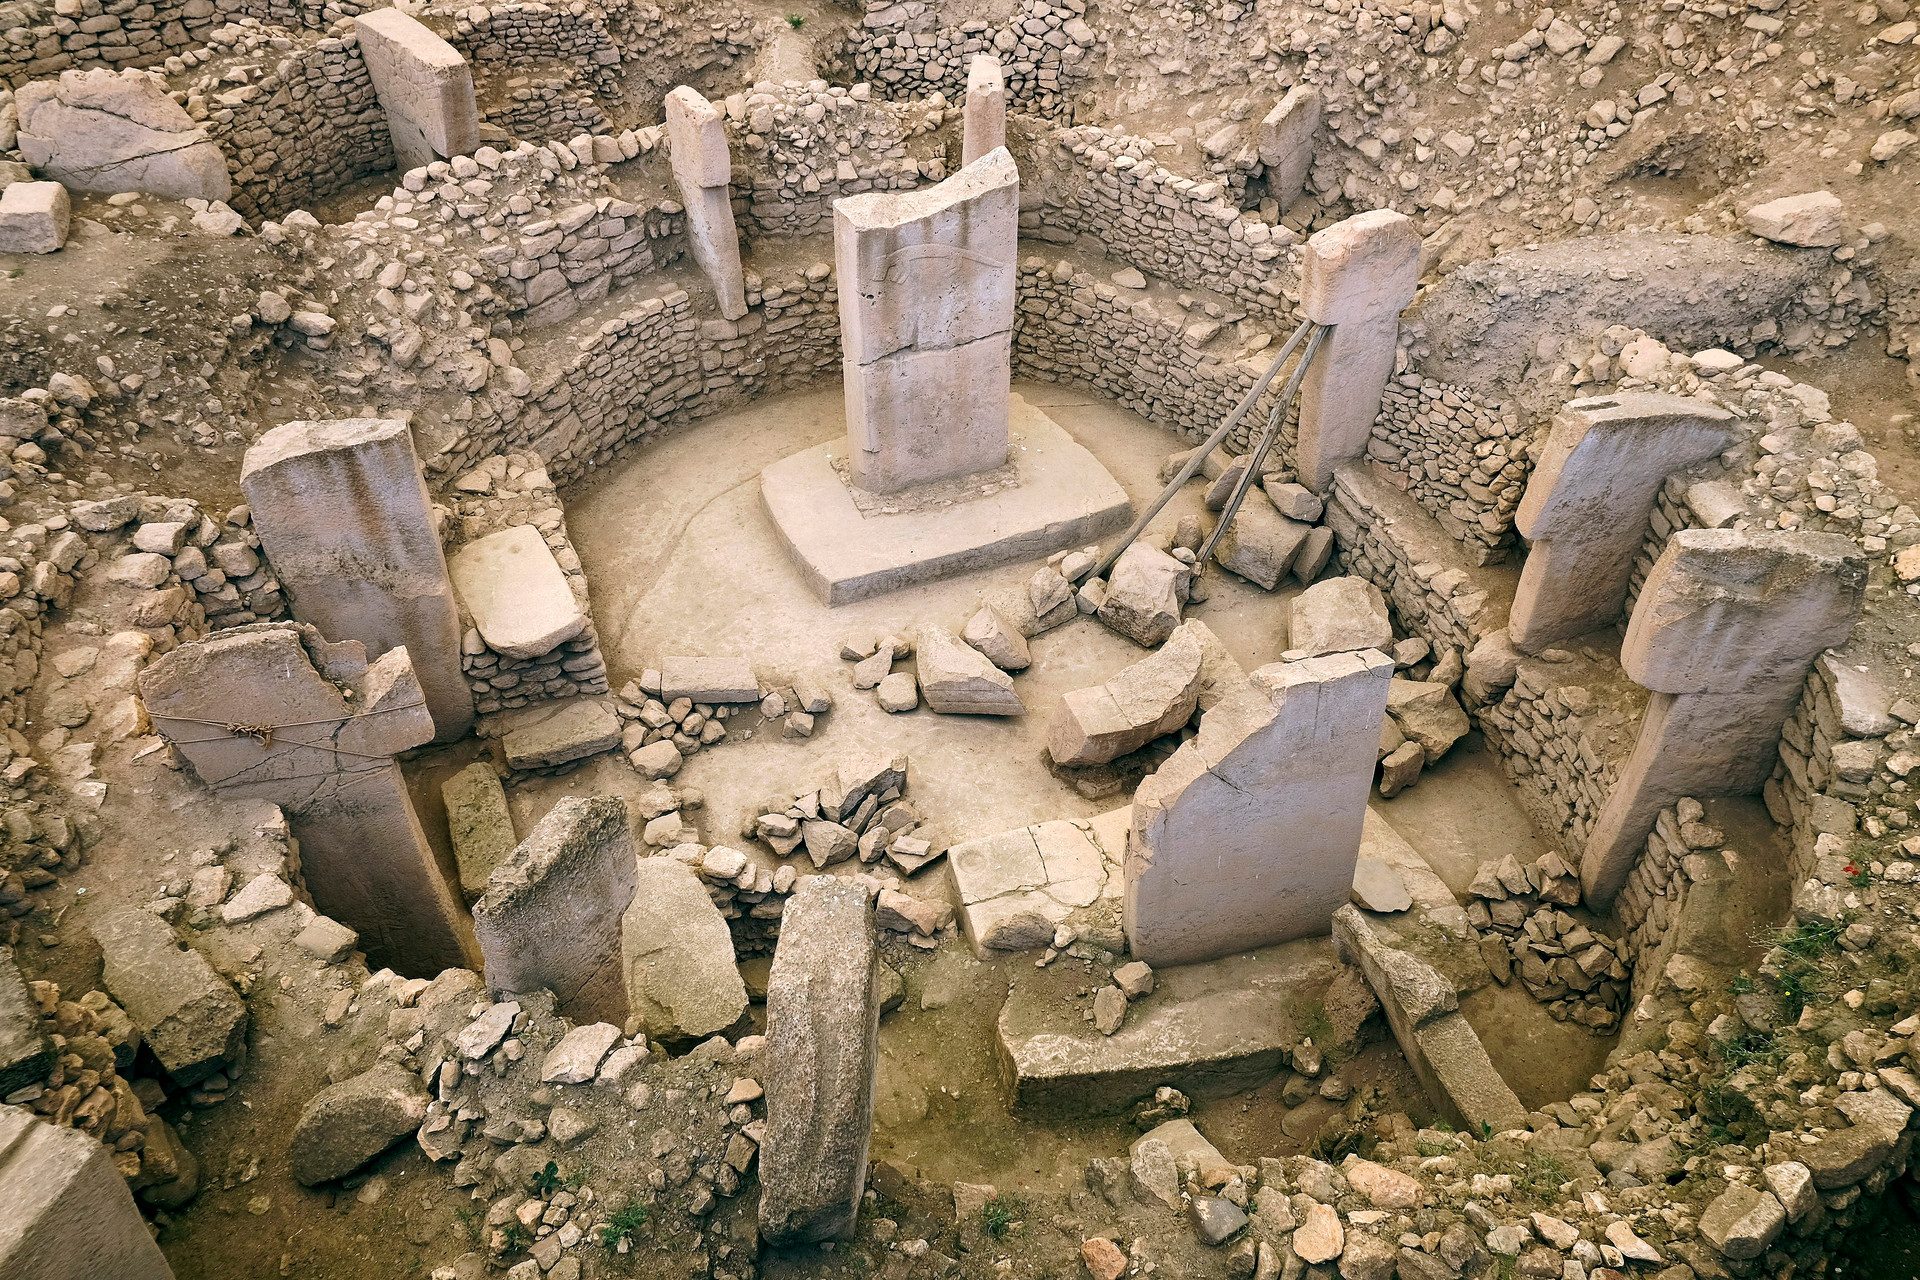 Khám phá những di tích cổ đại kỳ lạ chỉ có ở Thổ Nhĩ Kỳ - 1